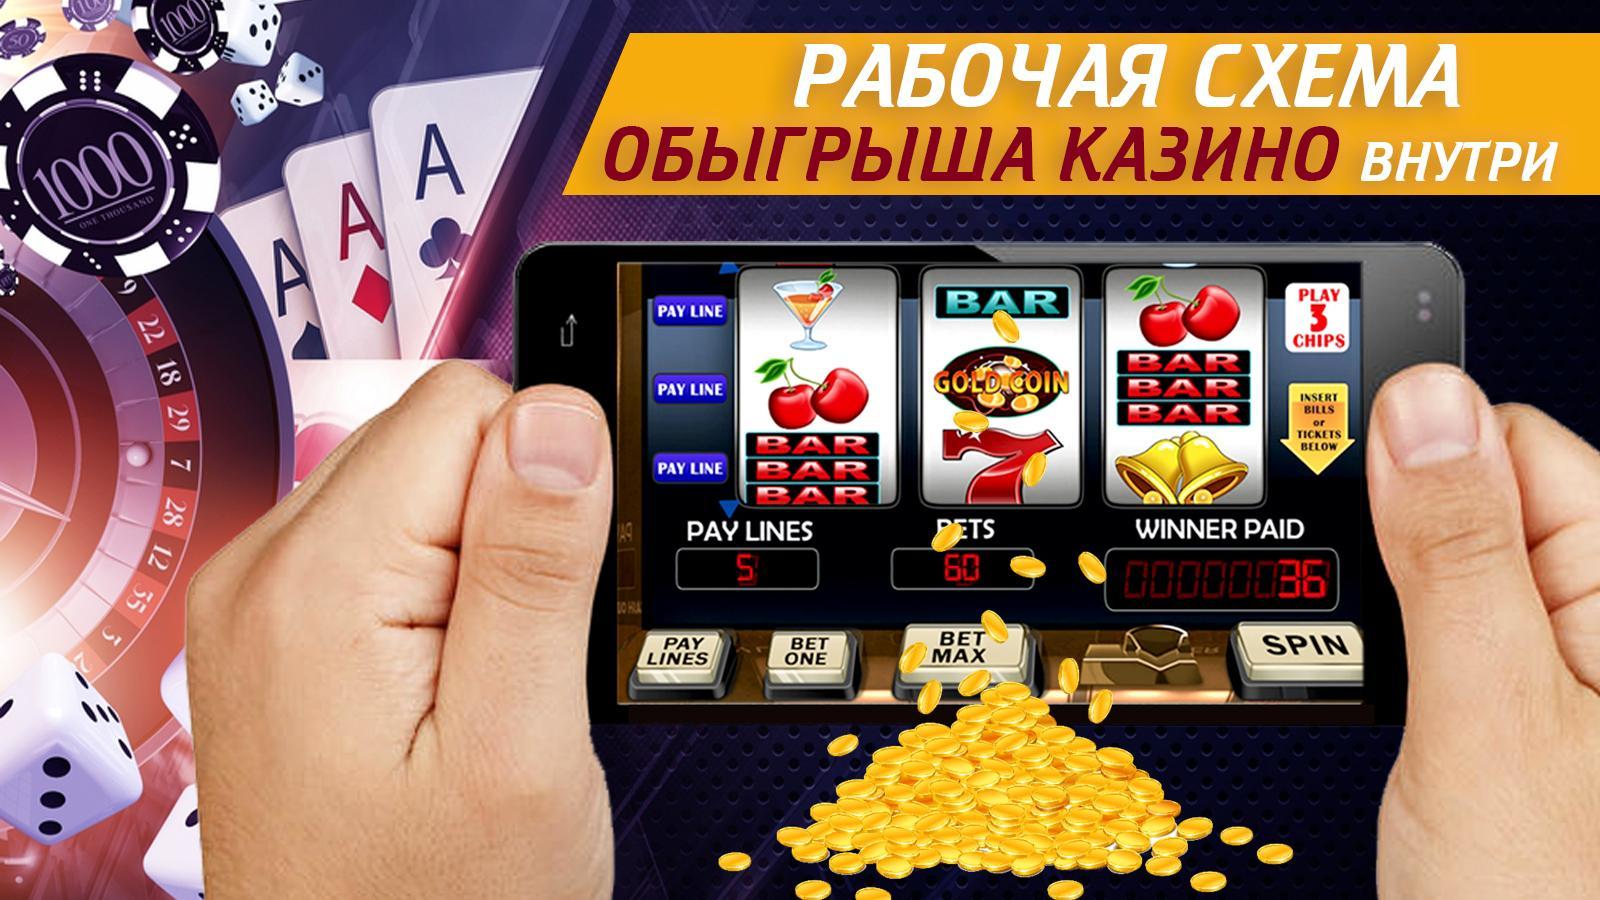 Слоты на деньги андроид на iphone. Схемы казино. Схемы выигрыша в казино. Схемы обыгрыша казино.